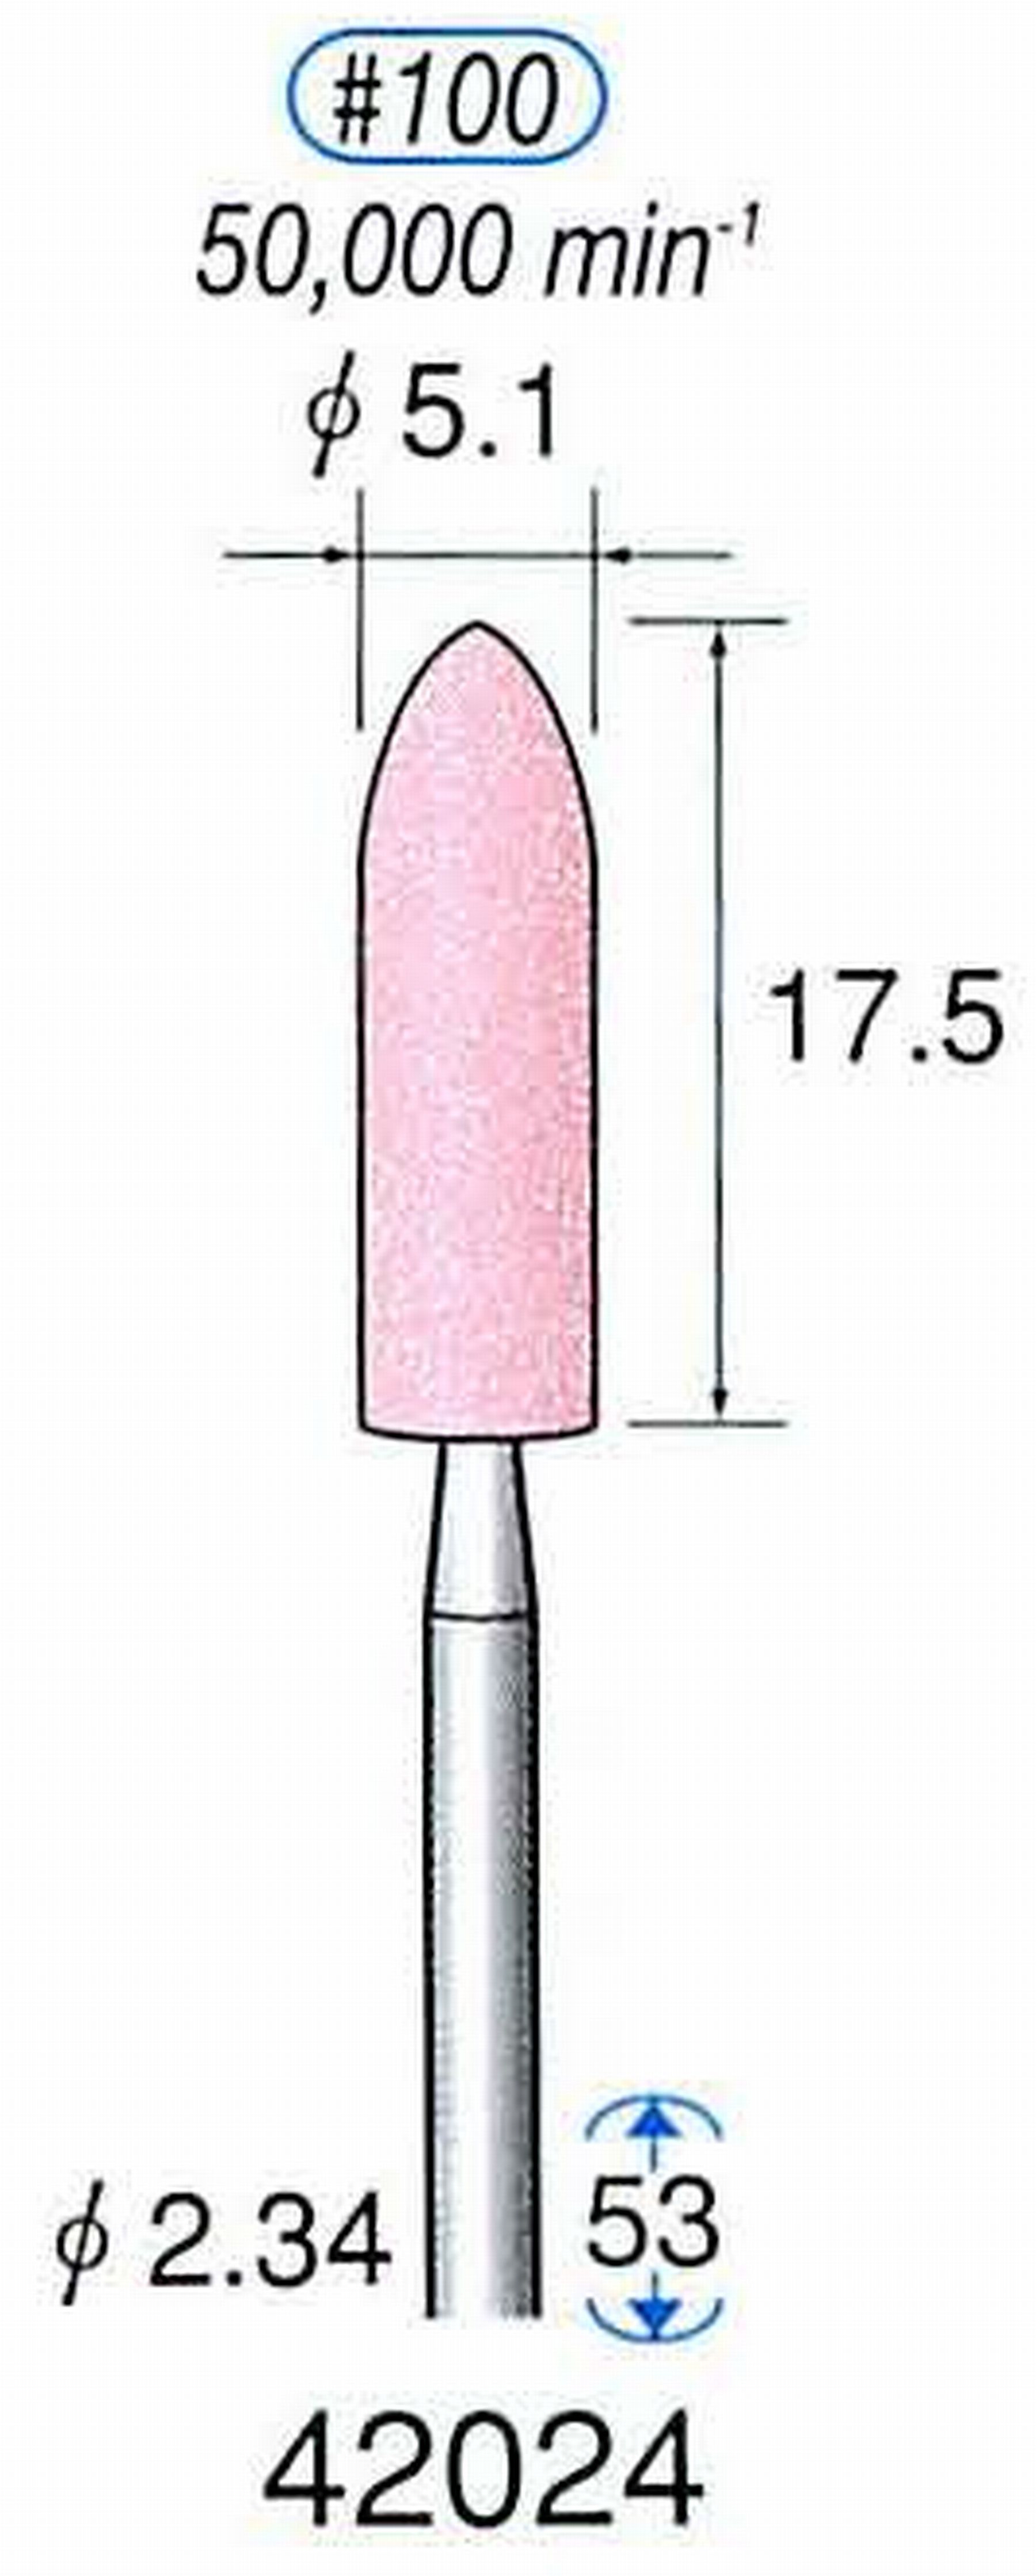 ナカニシ/NAKANISHI 軸付砥石(WA砥粒) 軸径(シャンク) φ2.34mm 42024